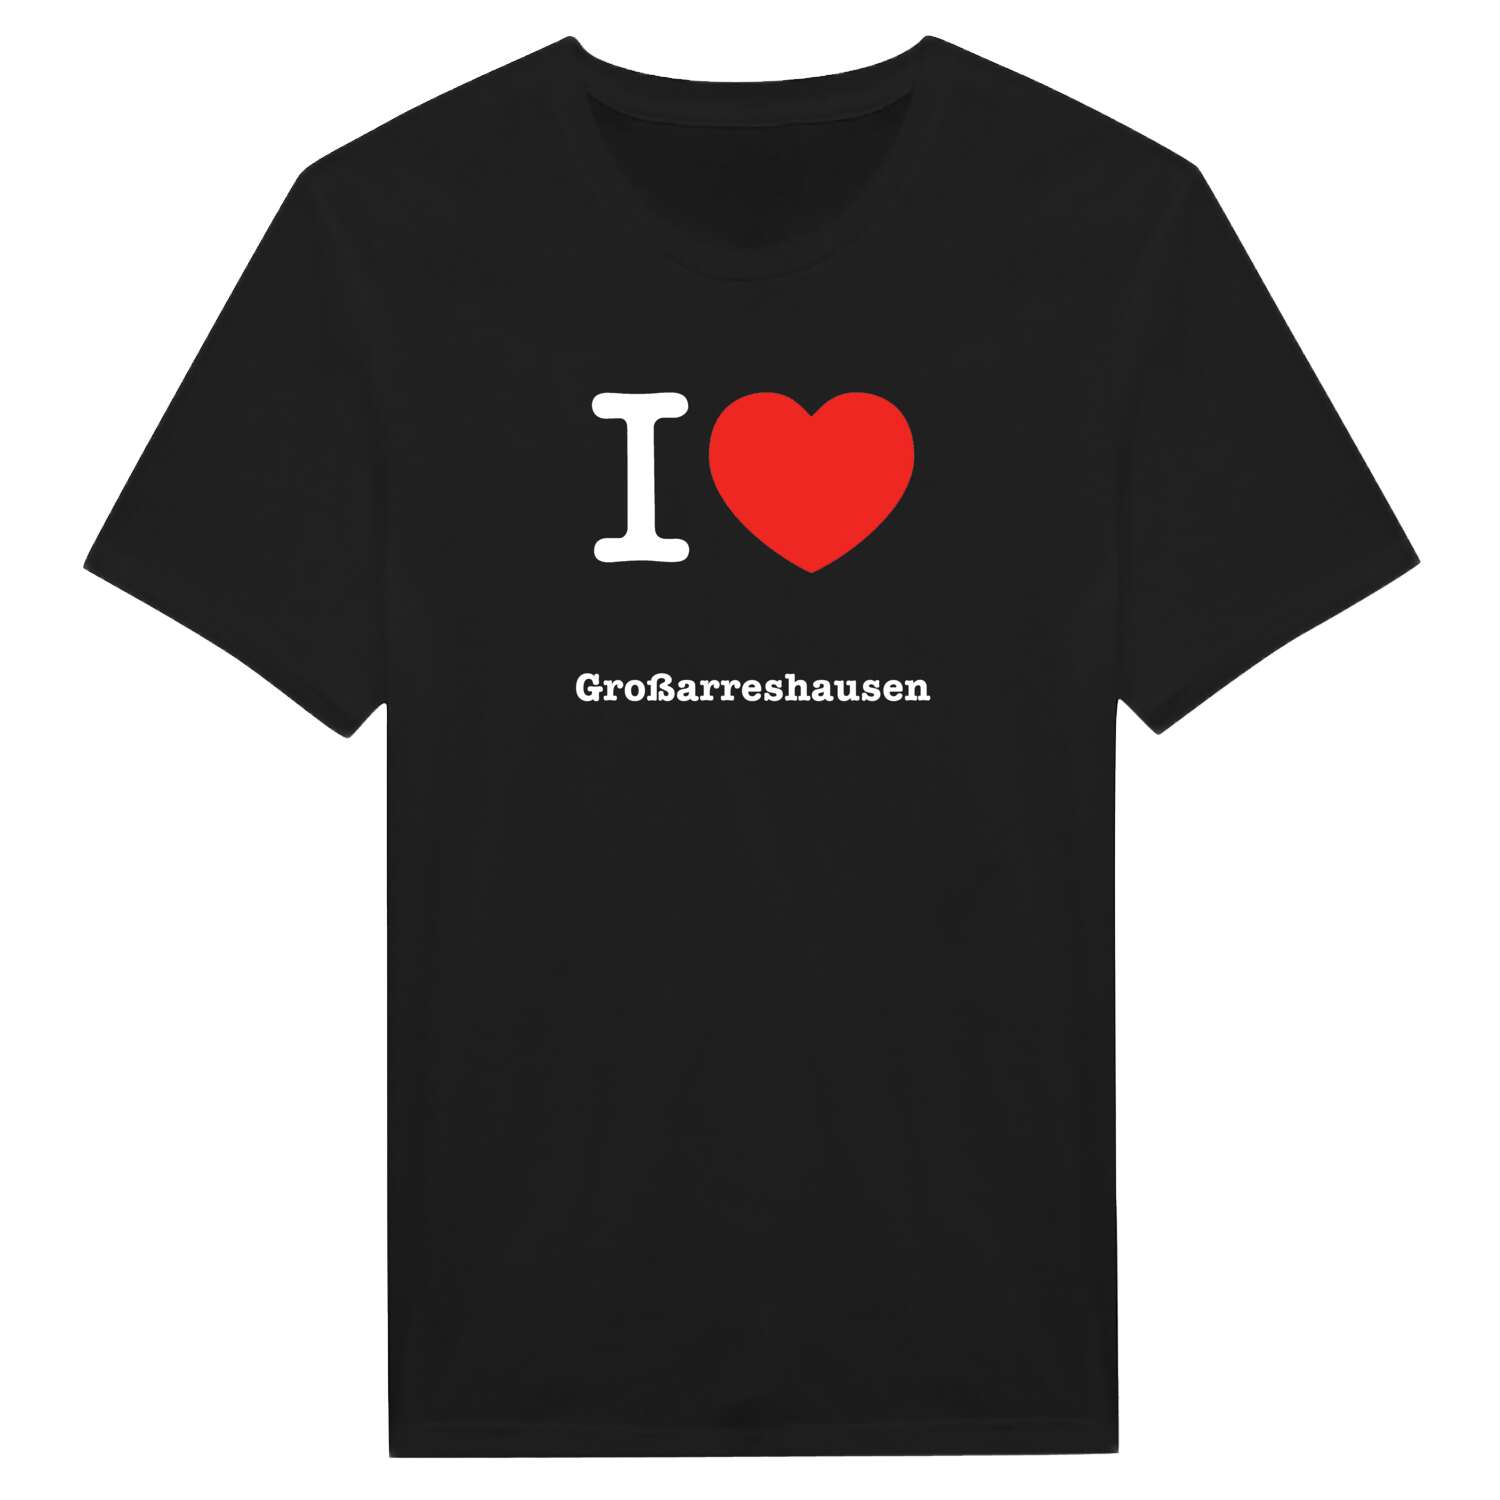 Großarreshausen T-Shirt »I love«